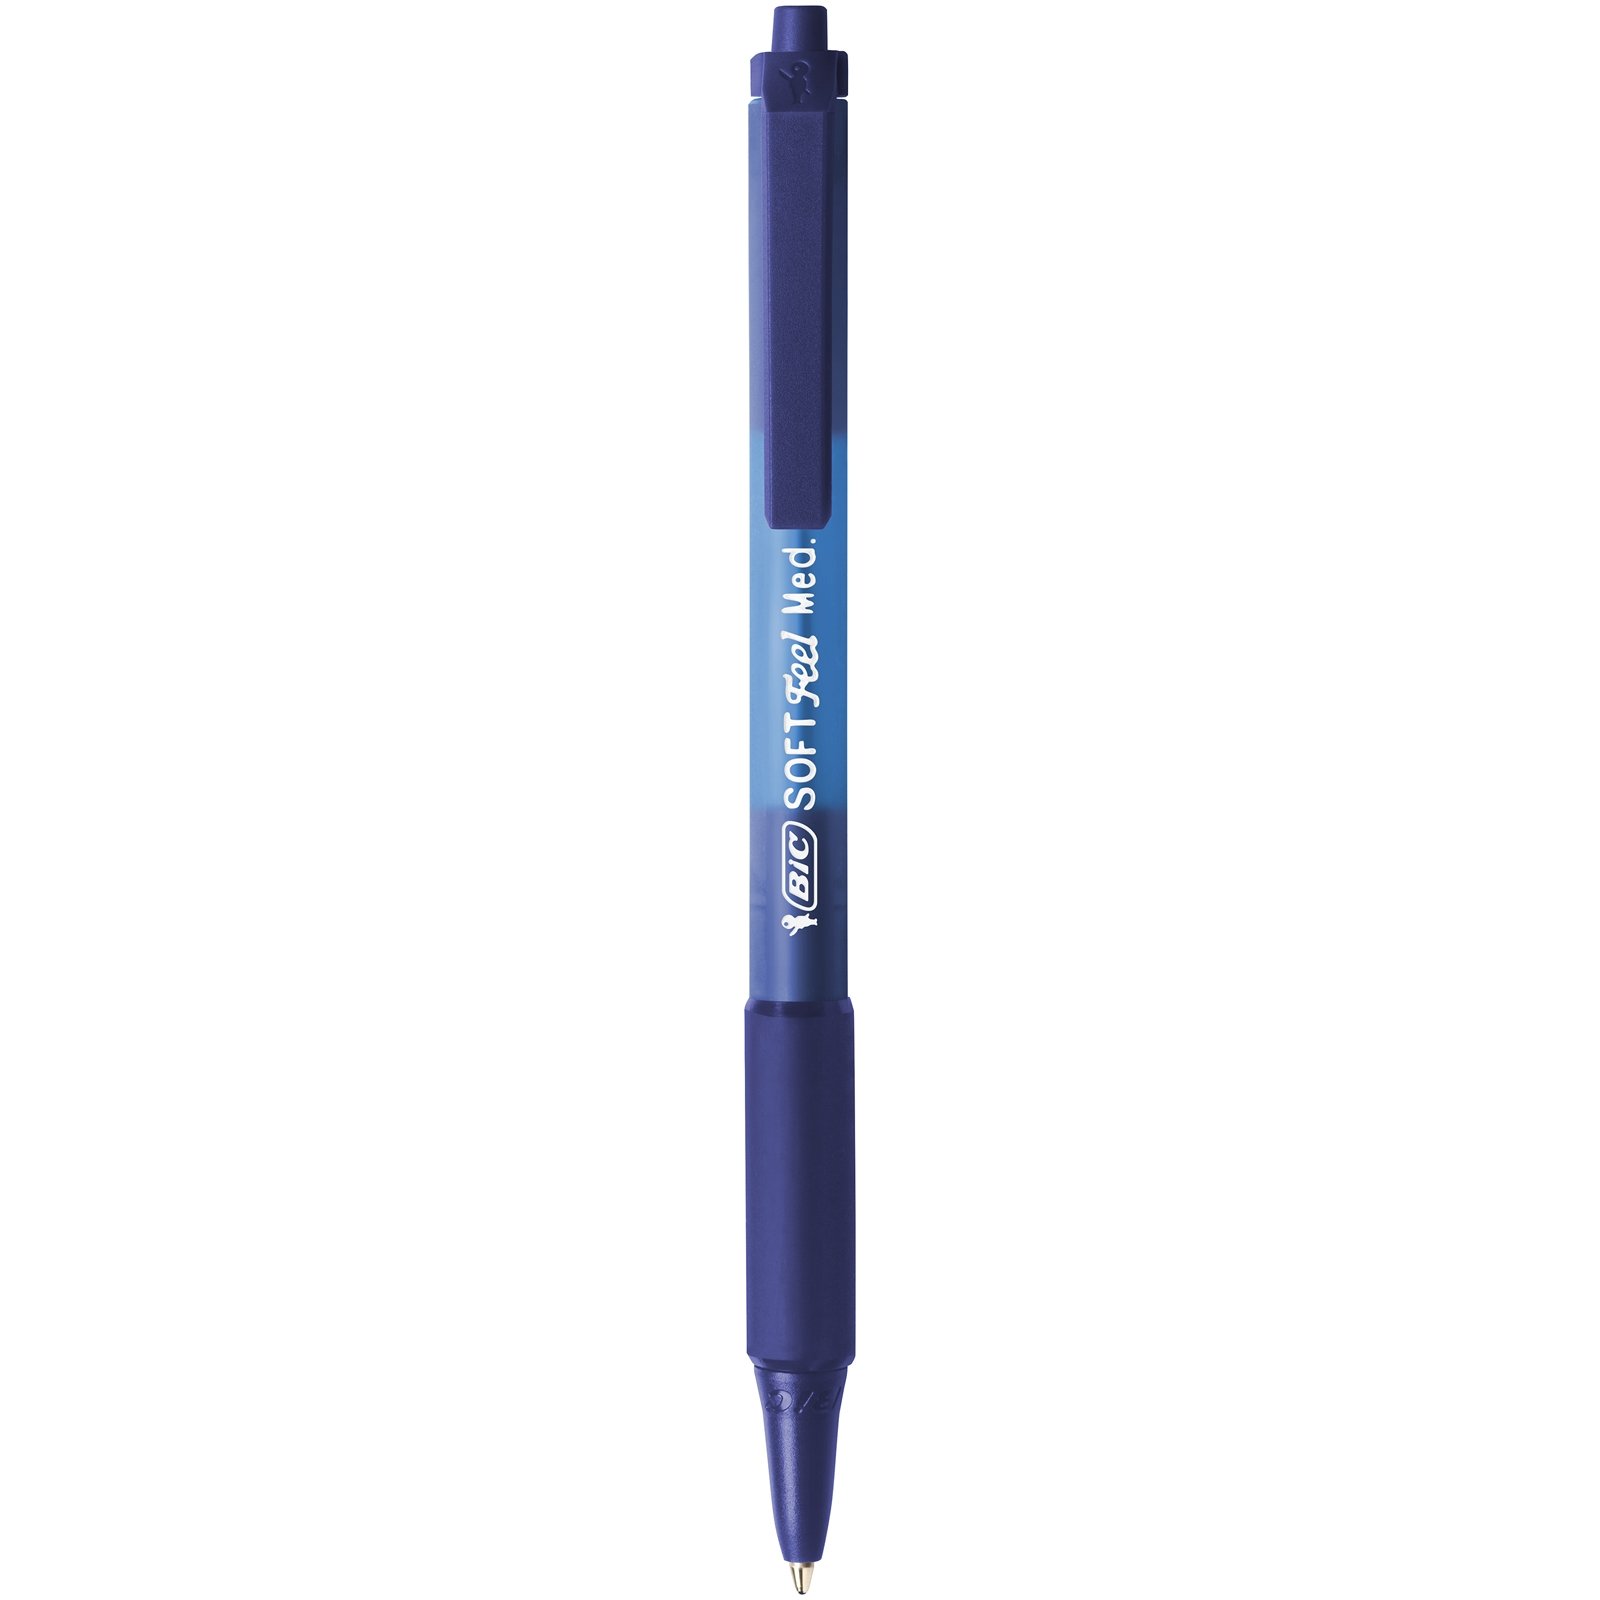 Ручка шариковая BIC Soft Feel Clic Grip, синий, 3 шт. (837396) - фото 2